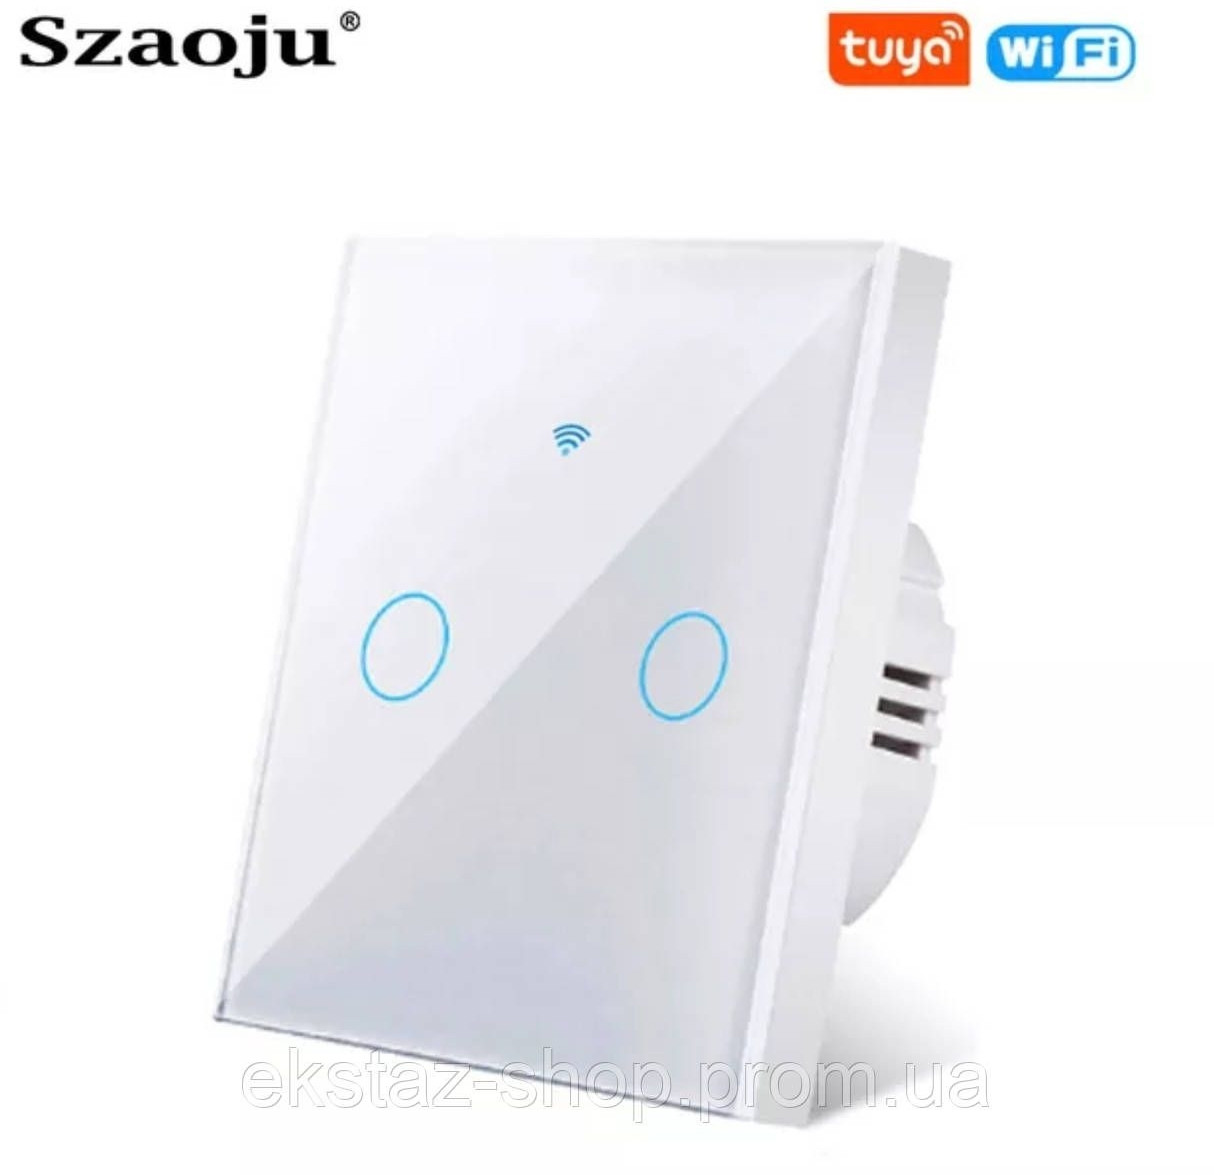 Szaoju Tuya WiFi вимикач WiFi розумний сенсорний настінний білий подвійний Розумний будинок